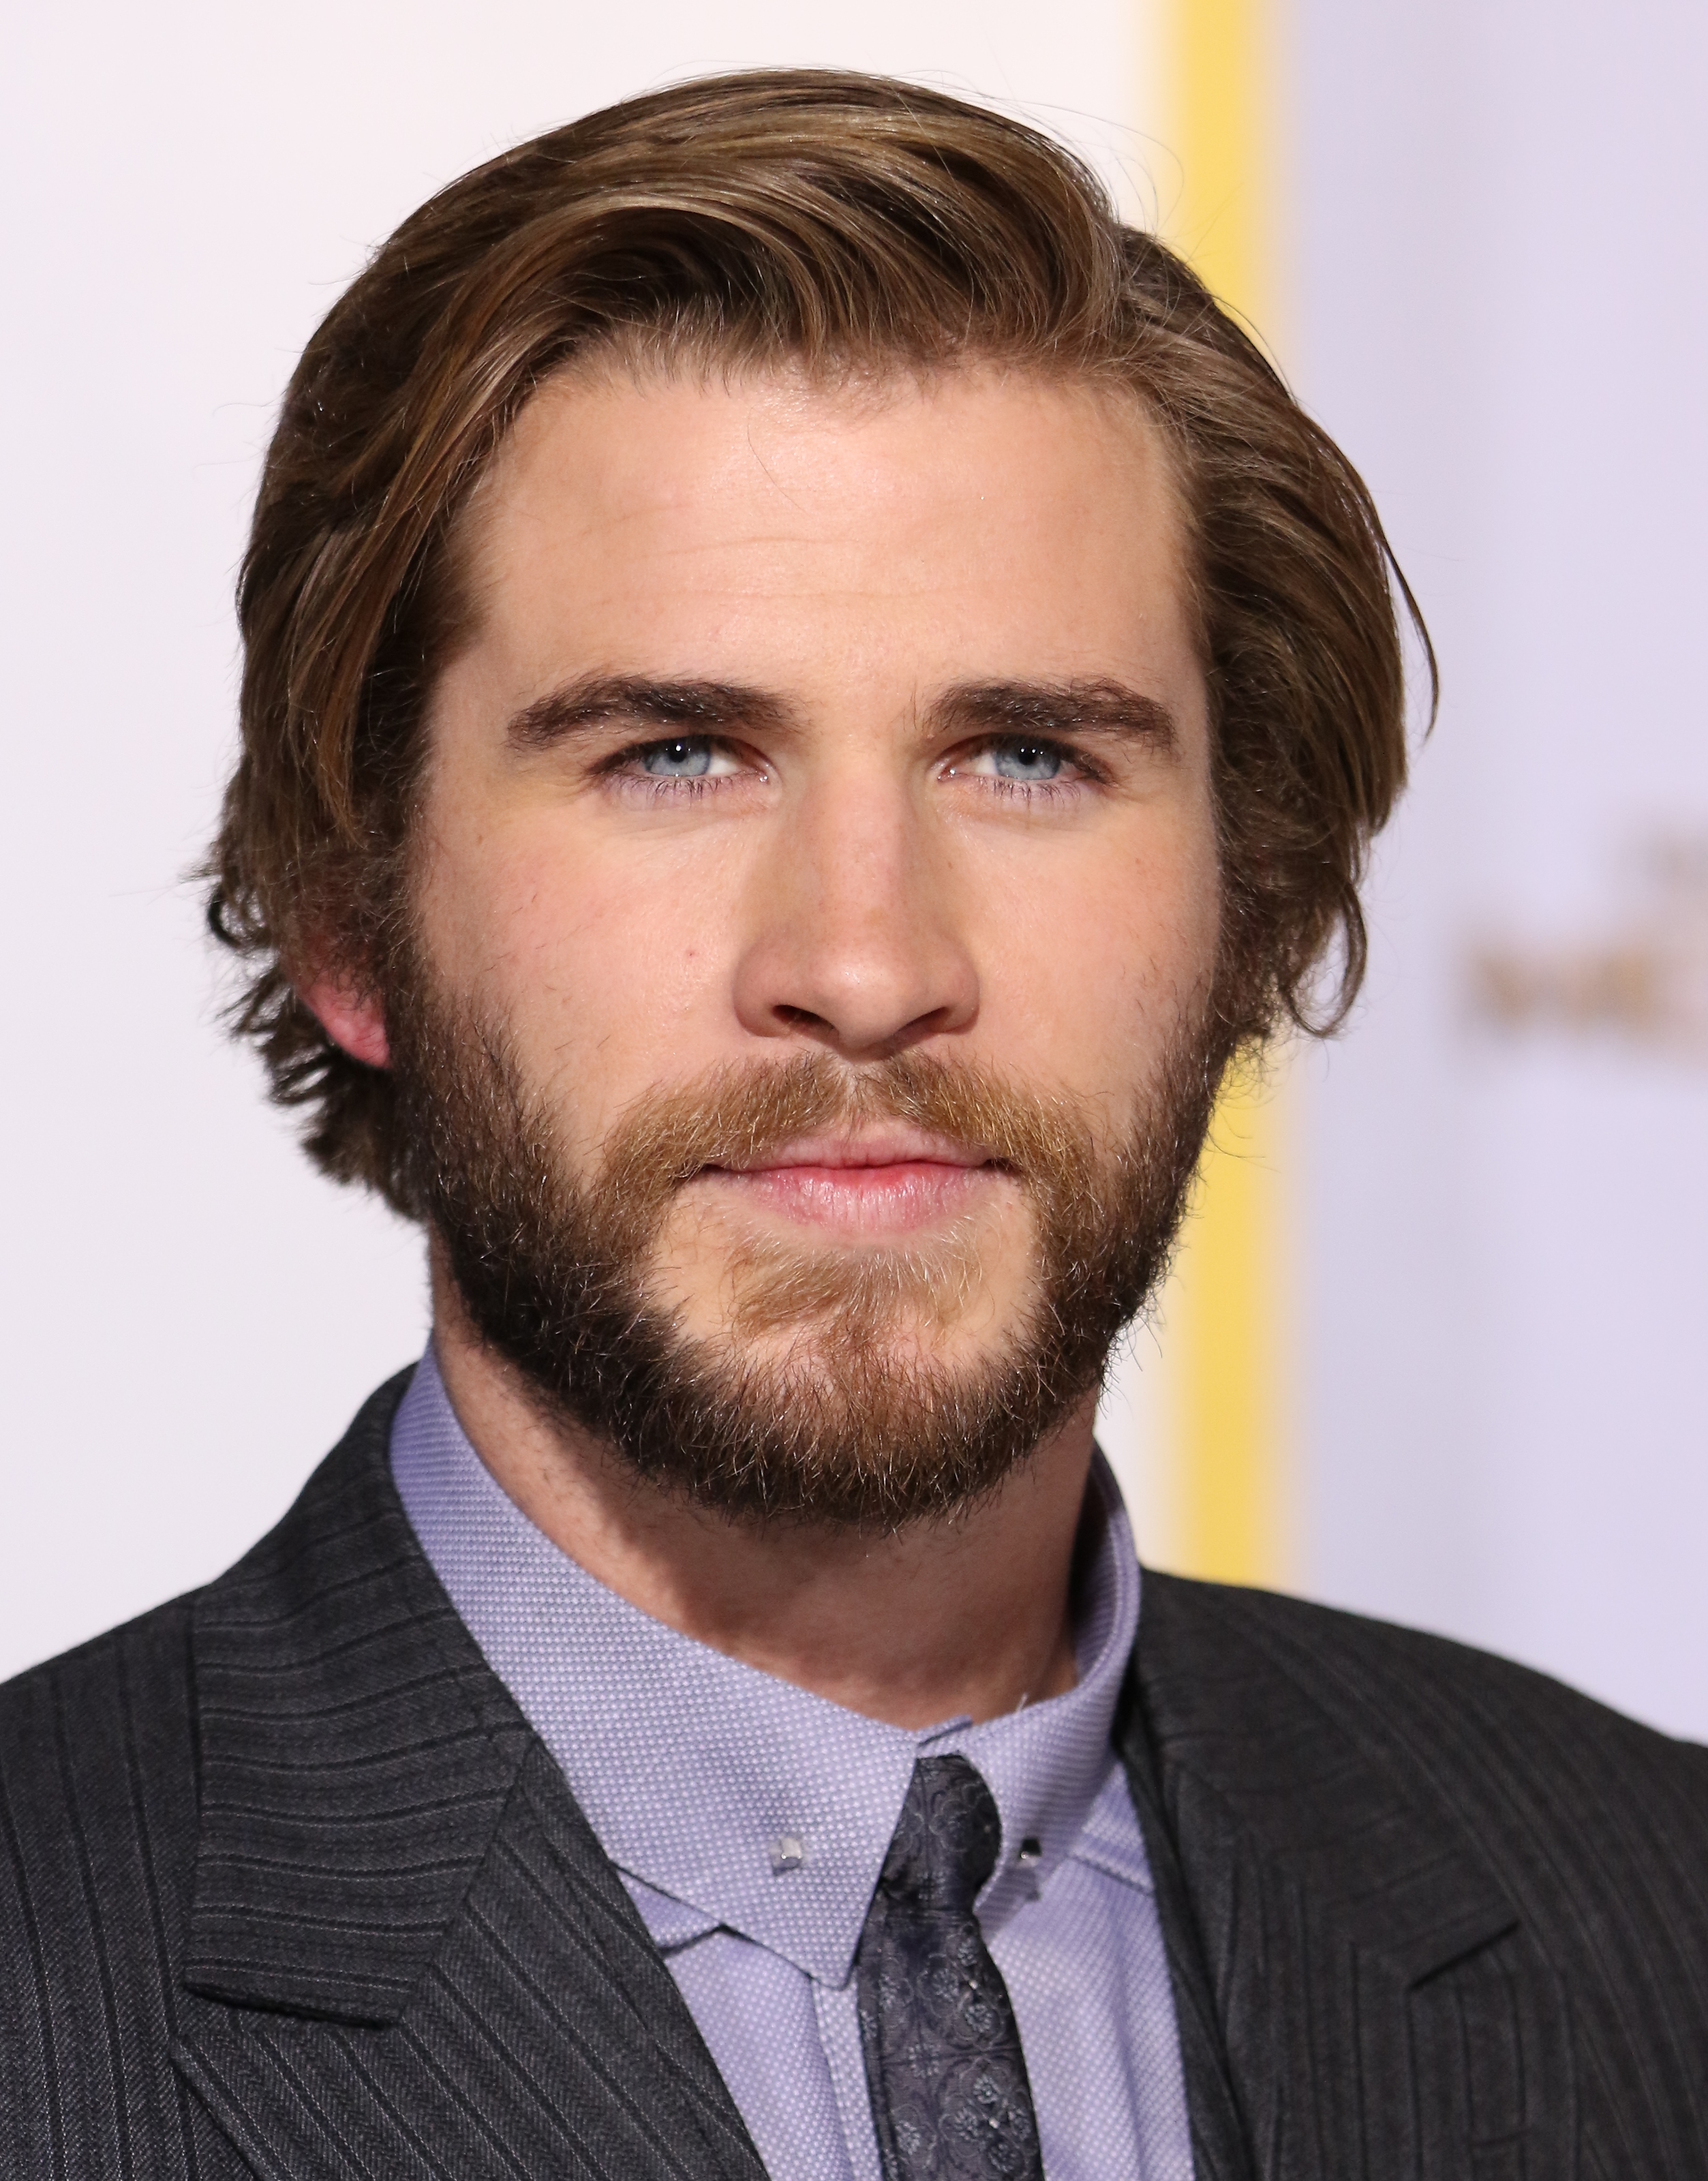 Liam Hemsworth besucht die Los Angeles-Premiere von "The Hunger Games: Mockingjay - Part 1" am 17. November 2014 in Los Angeles, Kalifornien | Quelle: Getty Images